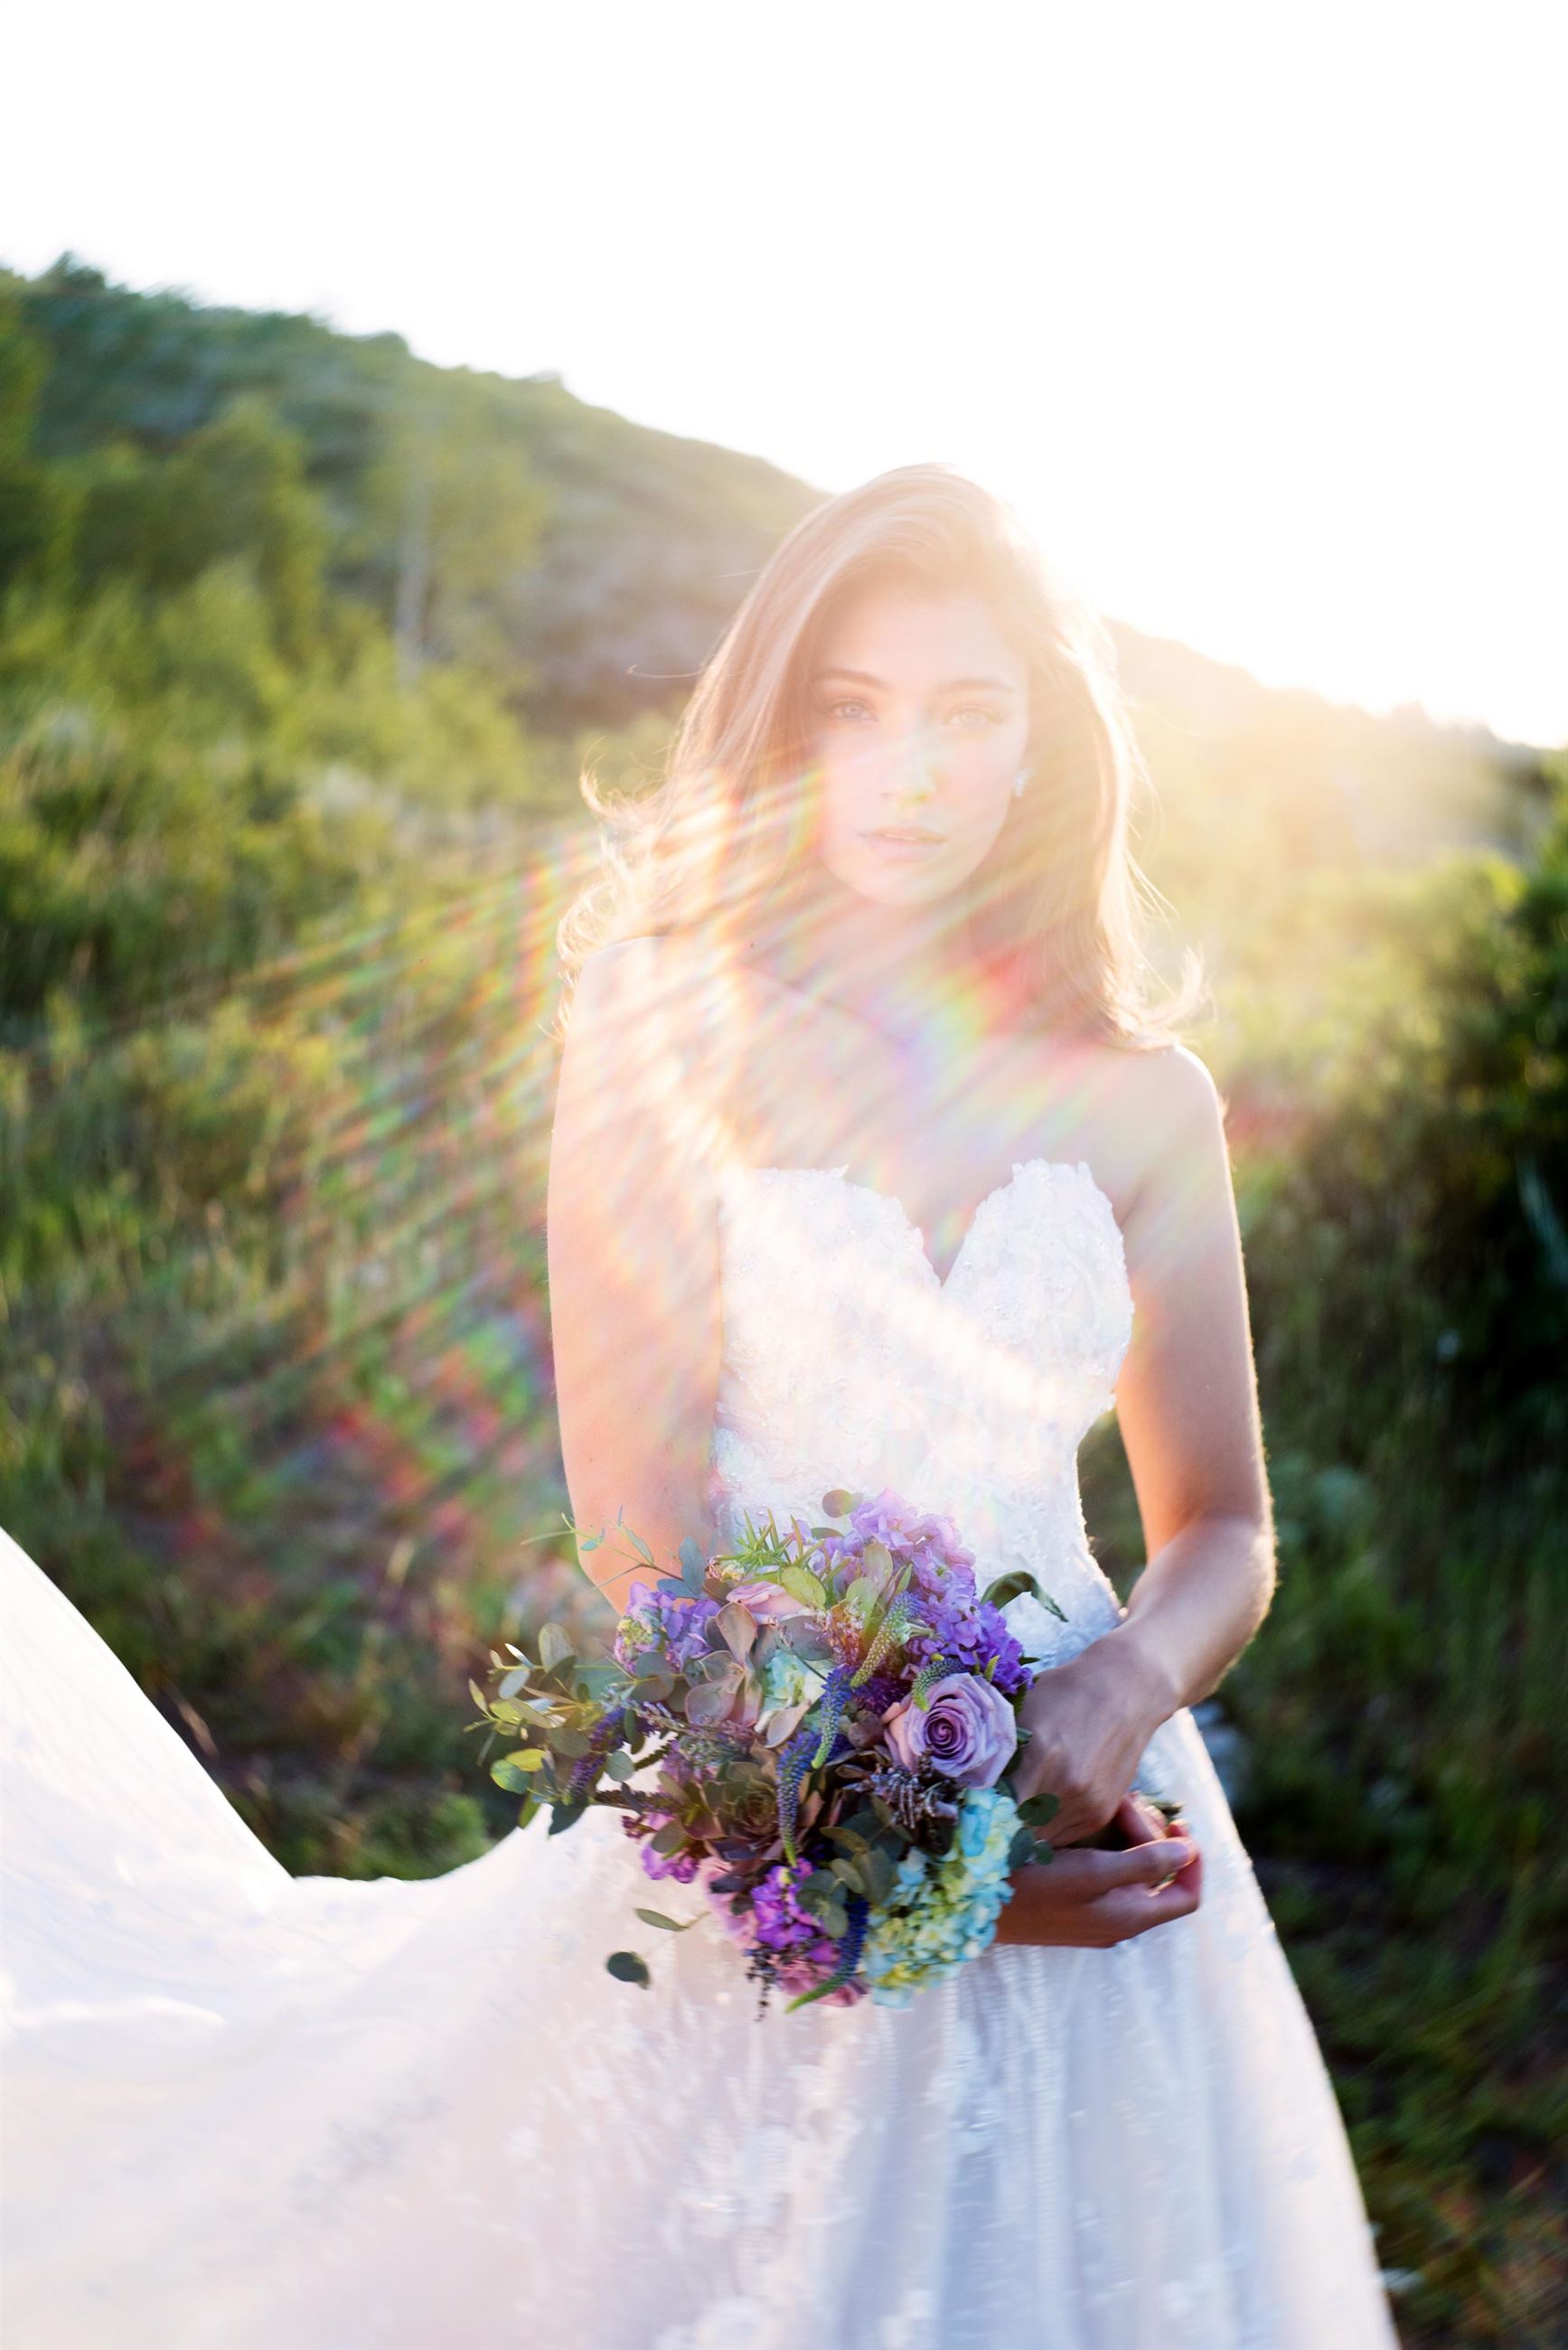 Brunette bride in strapless wedding dress holding flowers